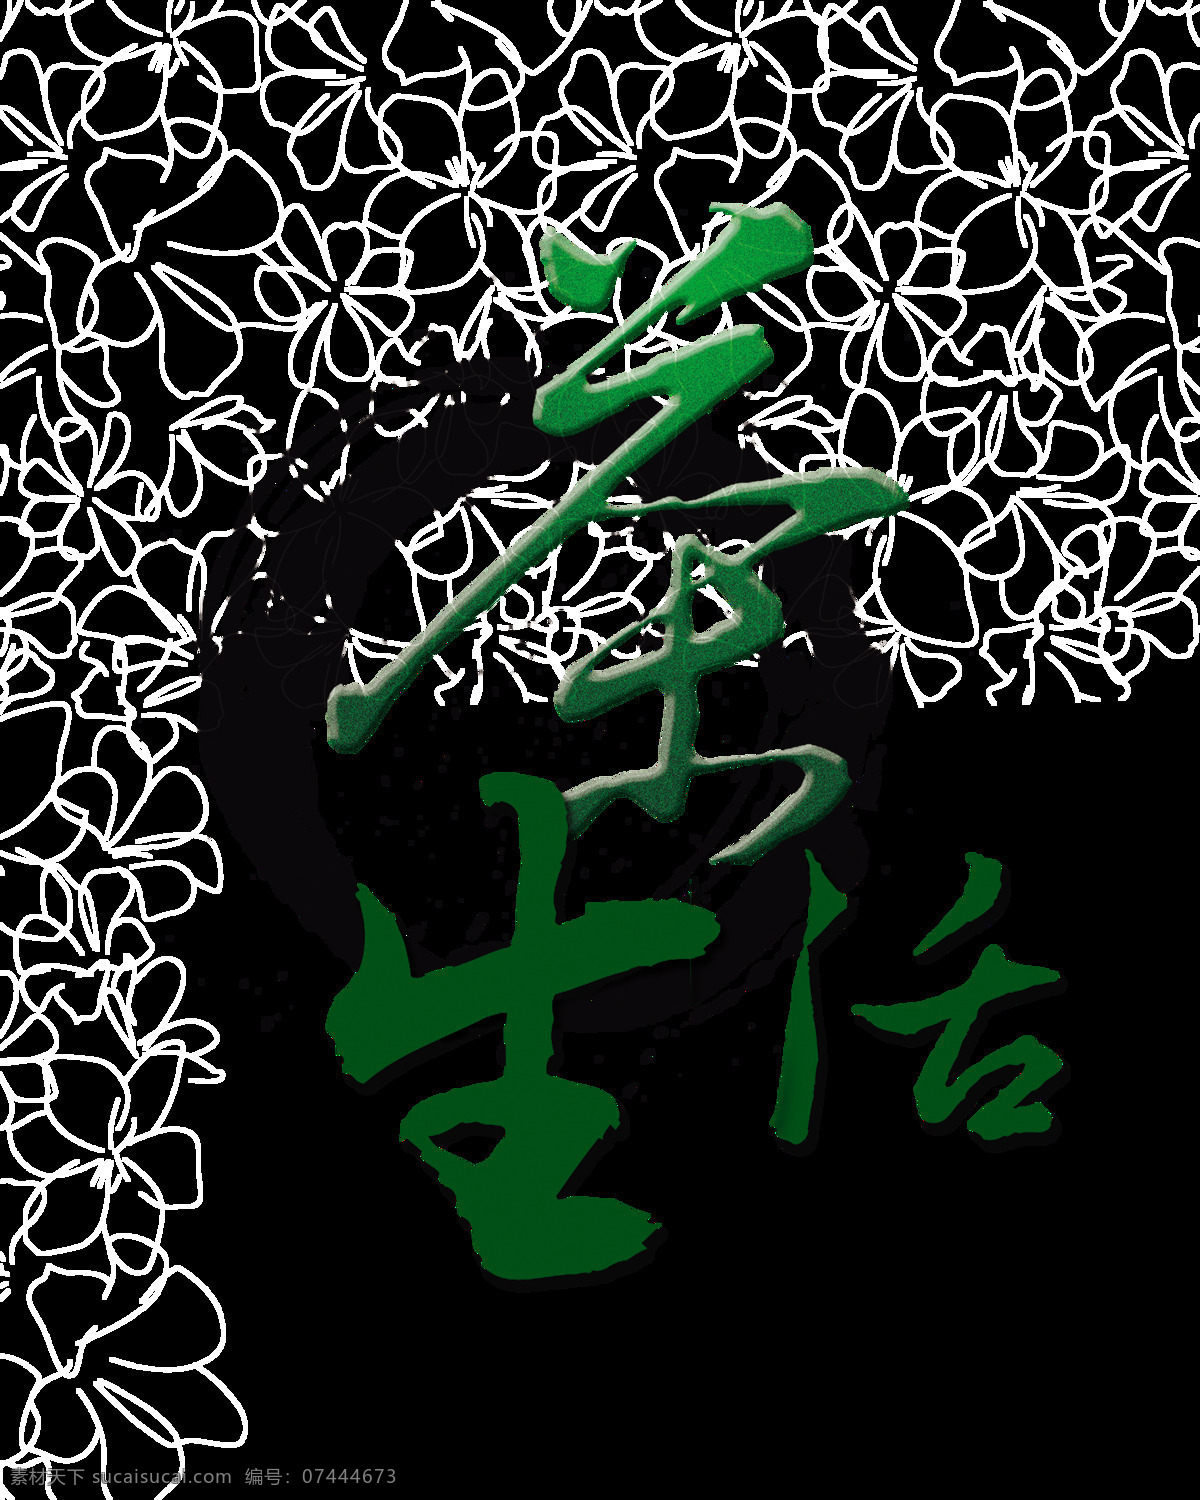 茶 生活 艺术 字 中国 风 广告 传承 茶文化 茶艺 茶生活 艺术字 海报 茶语 茶韵